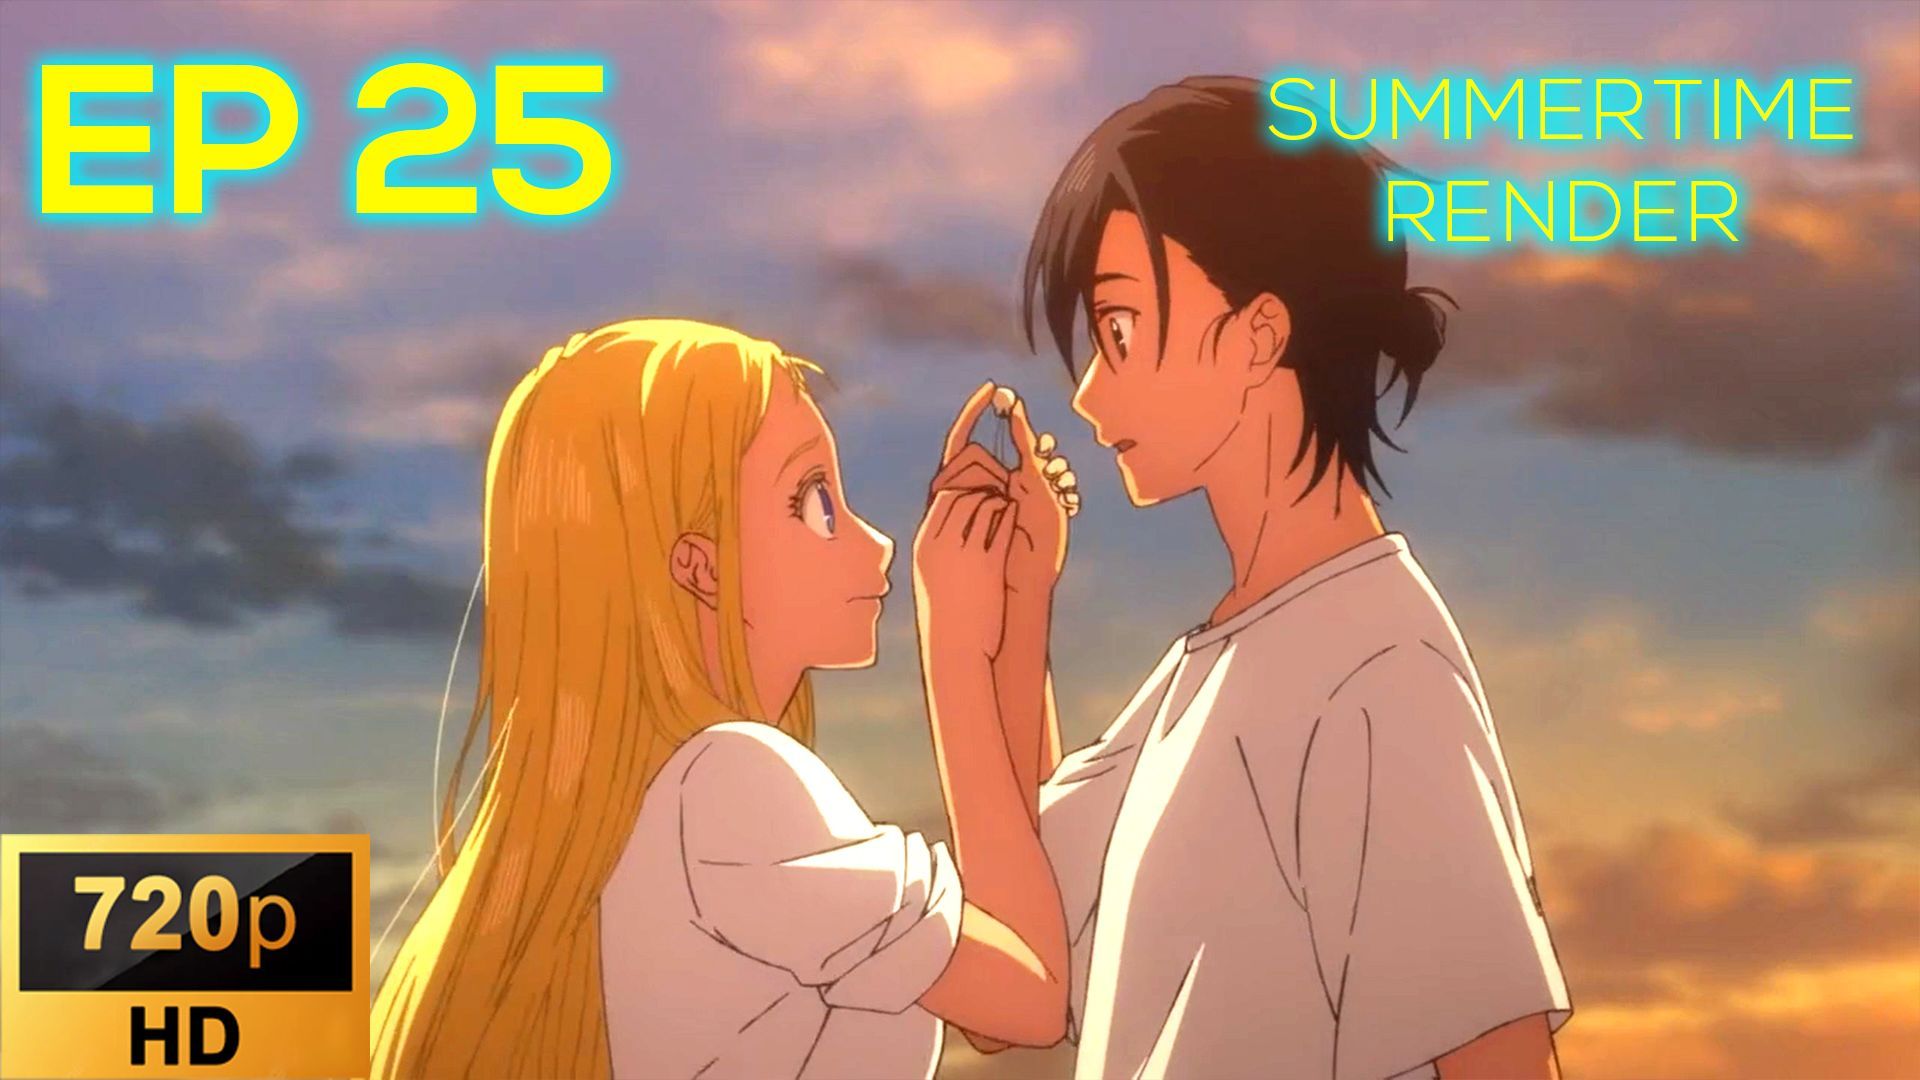 Summertime Render Episode 25 Sub Indo: Jadwal Tayang, Spoiler dan